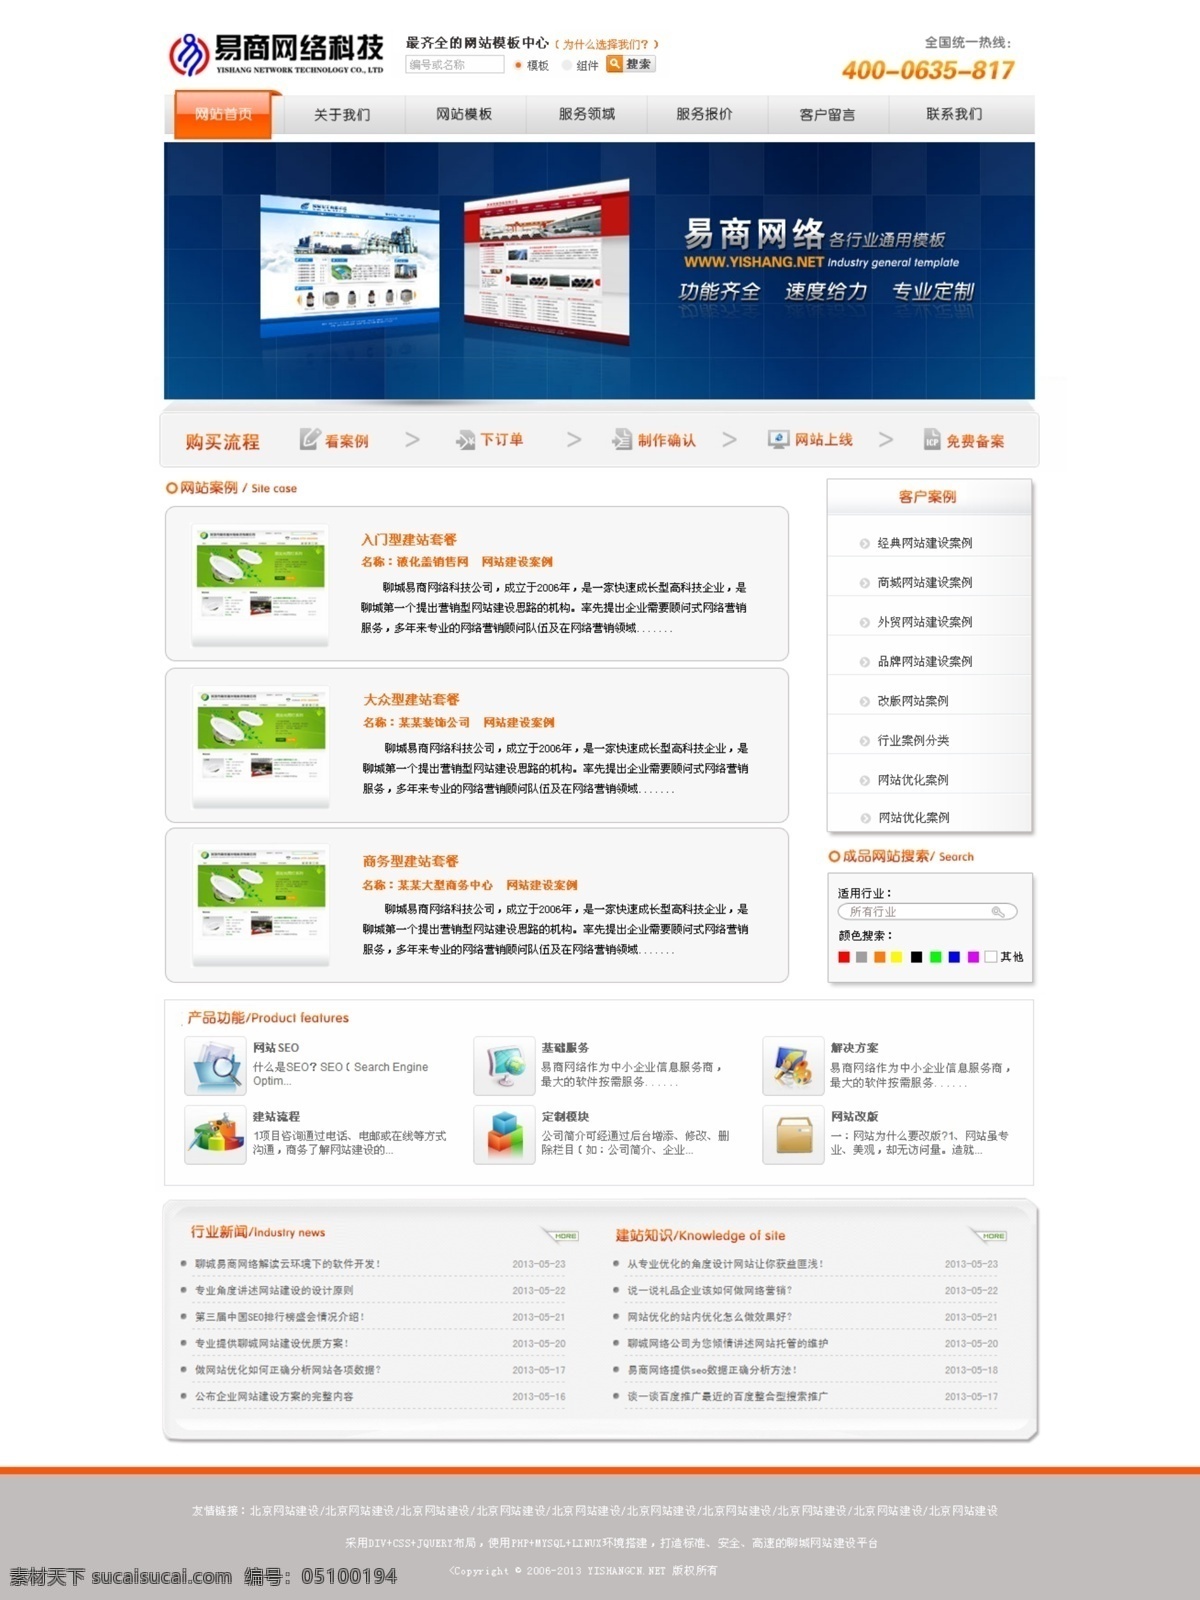 网站 模版 网络公司 网页模板 网页设计 网站模版 源文件 中文模板 模版站 站 矢量图 现代科技